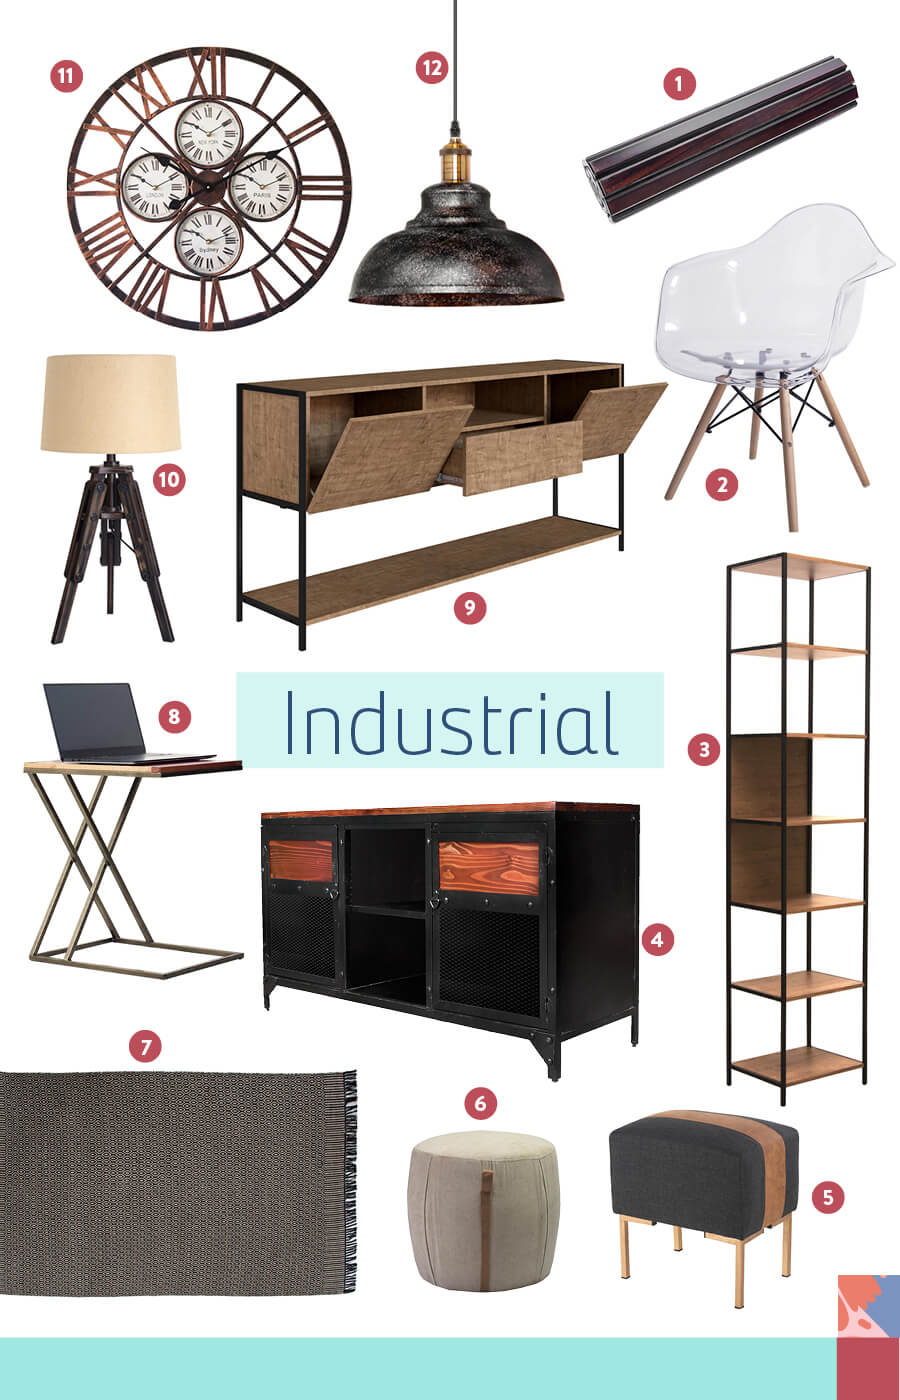 sillas de estilo industrial, repisas y mueble de estilo decorativo industrial.